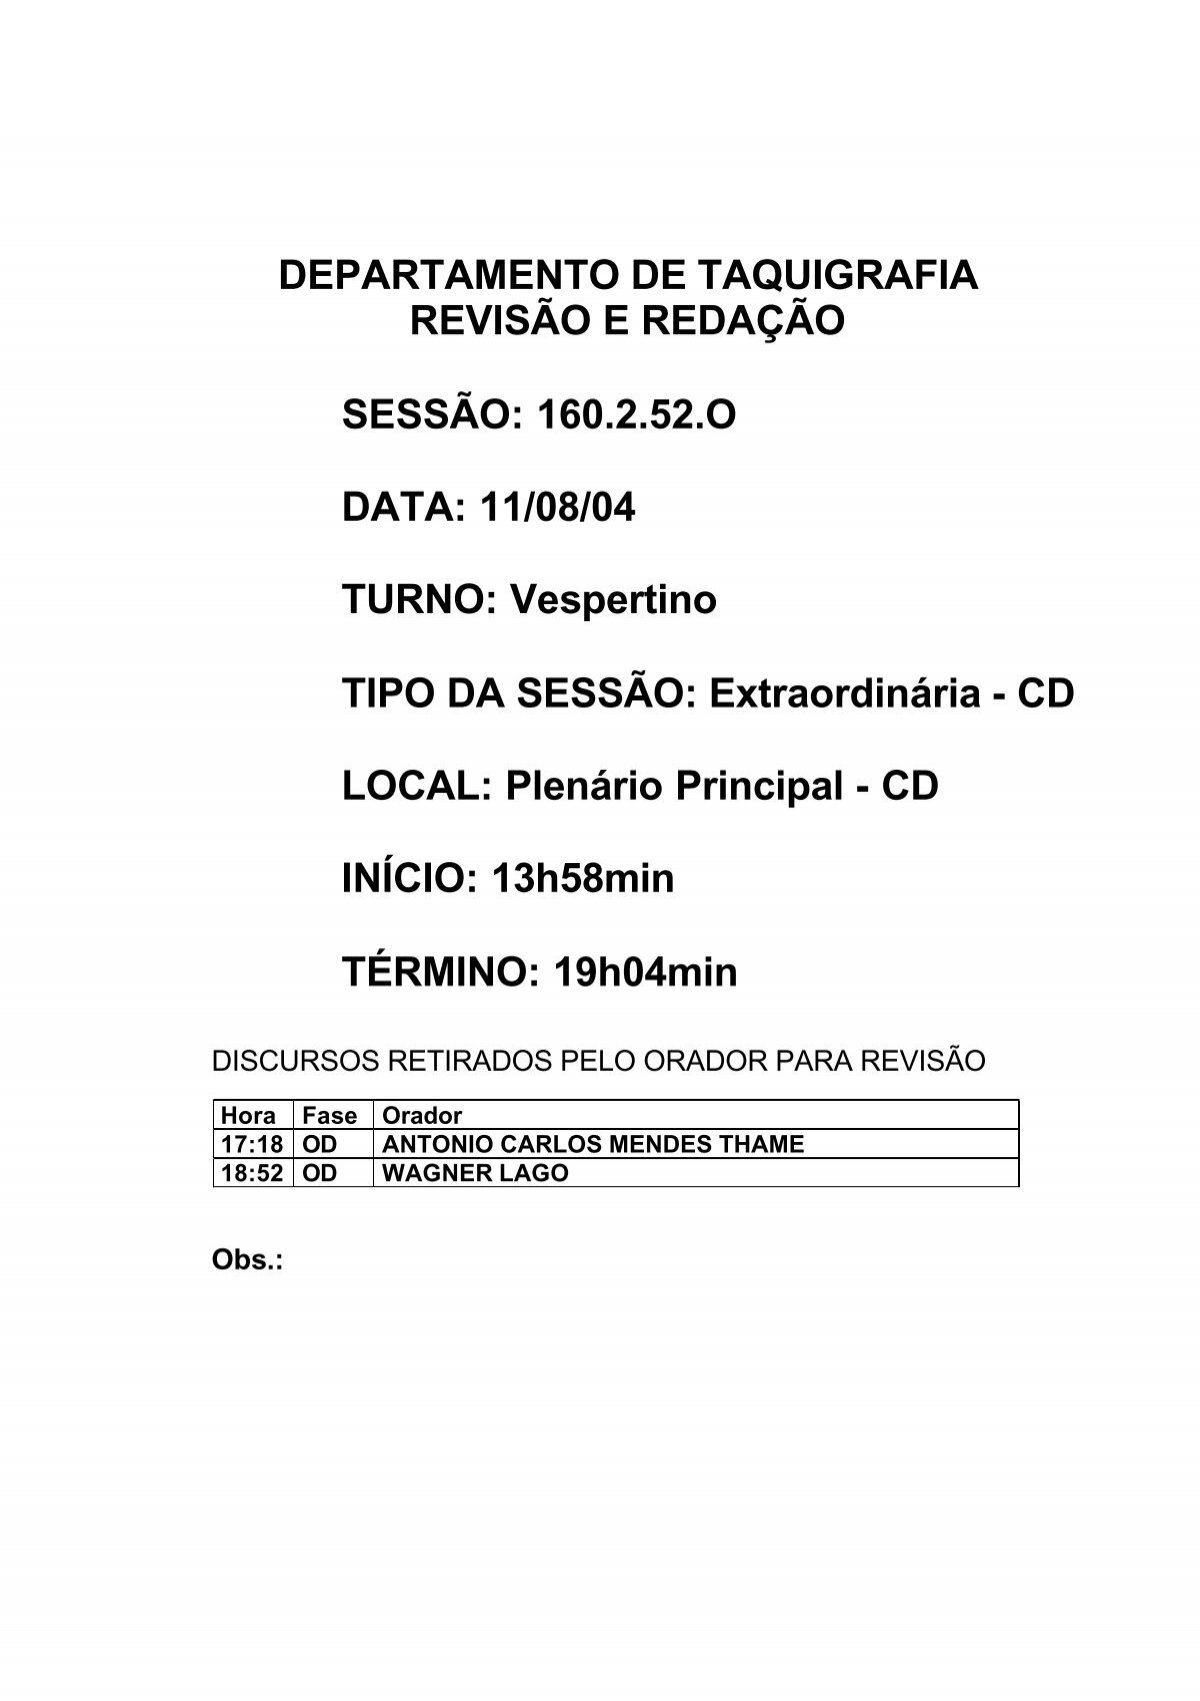 Santander Brasil - Conta pra gente: você sabe mesmo em que momentos usar o  cheque especial? Use os botões de reações do Facebook para mostrar o que a  frase na imagem provoca